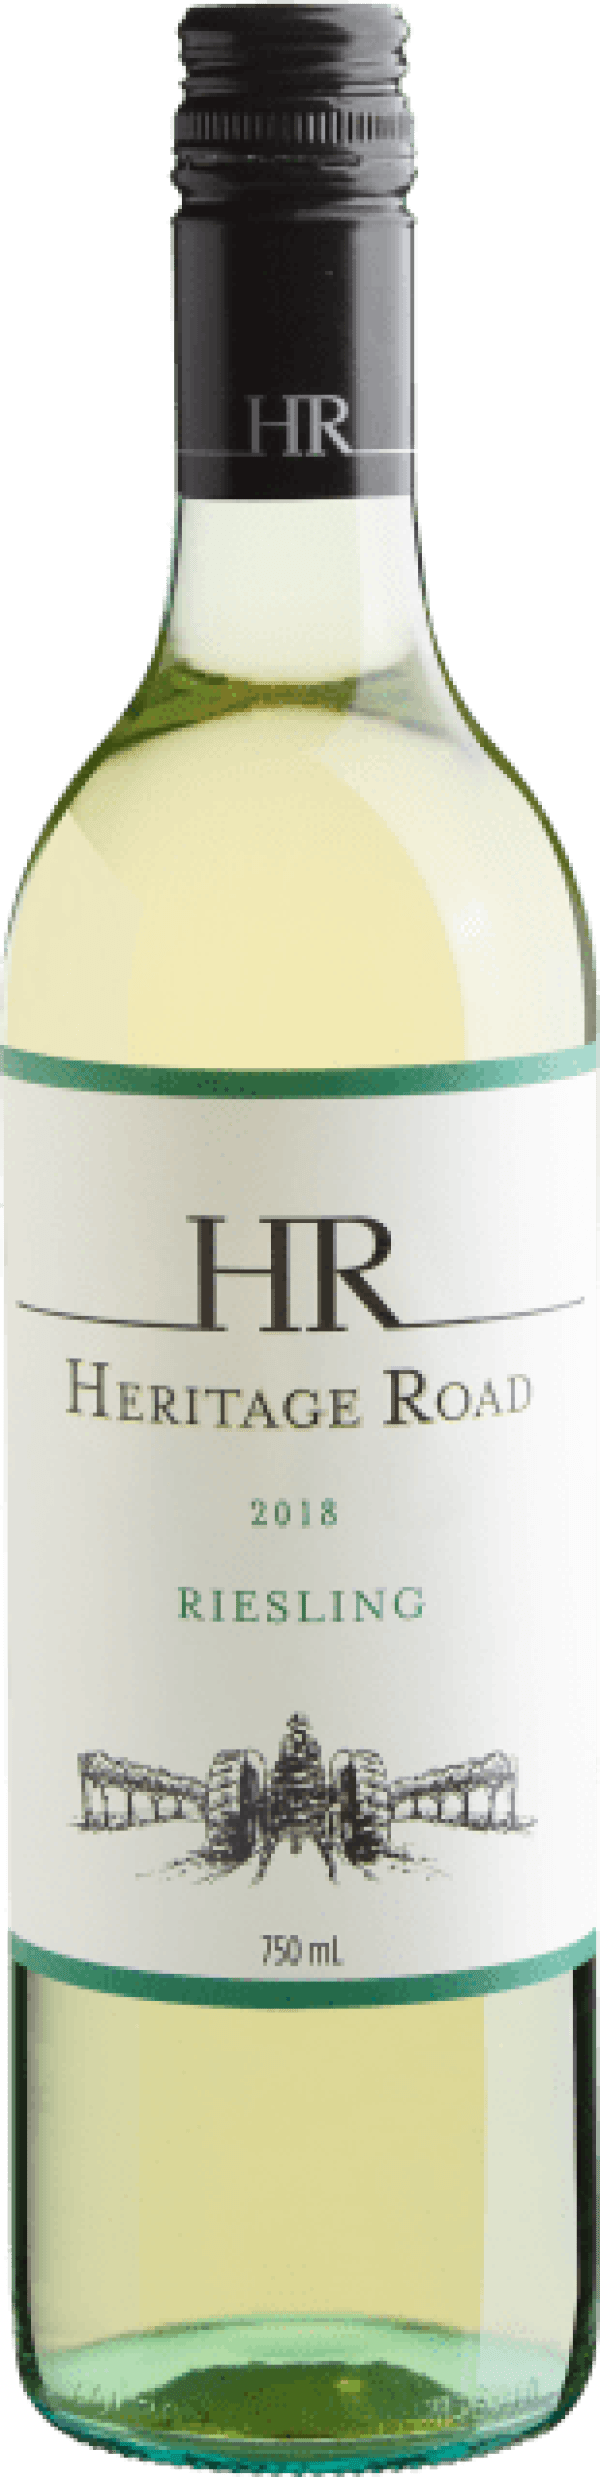 Heritage Road Riesling 2018